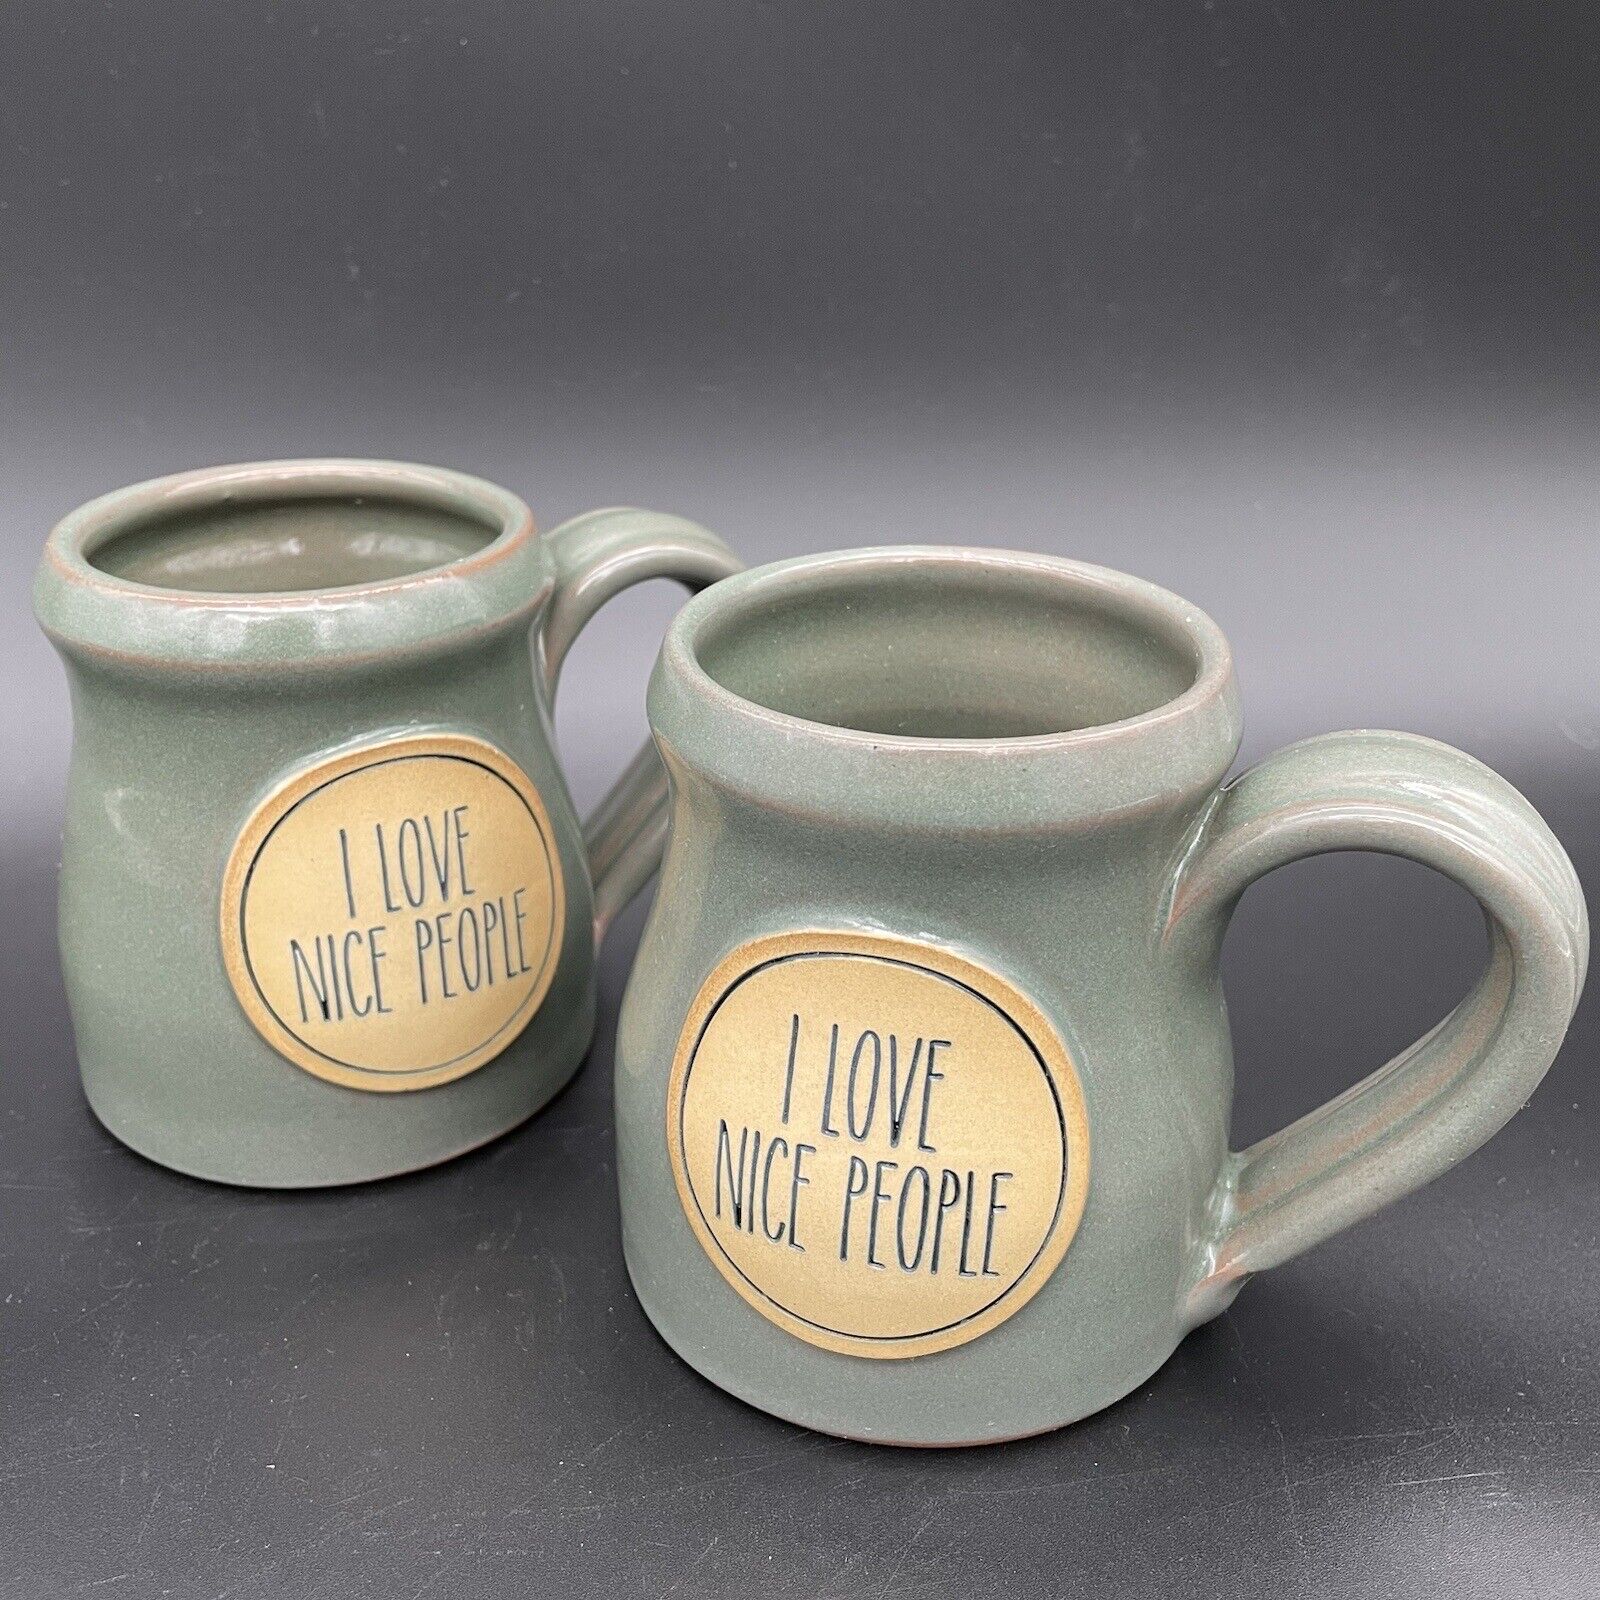 Pair of Deneen Pottery Coffee Mugs - 2017 - Handthrown - “I Love Nice People” ❤️